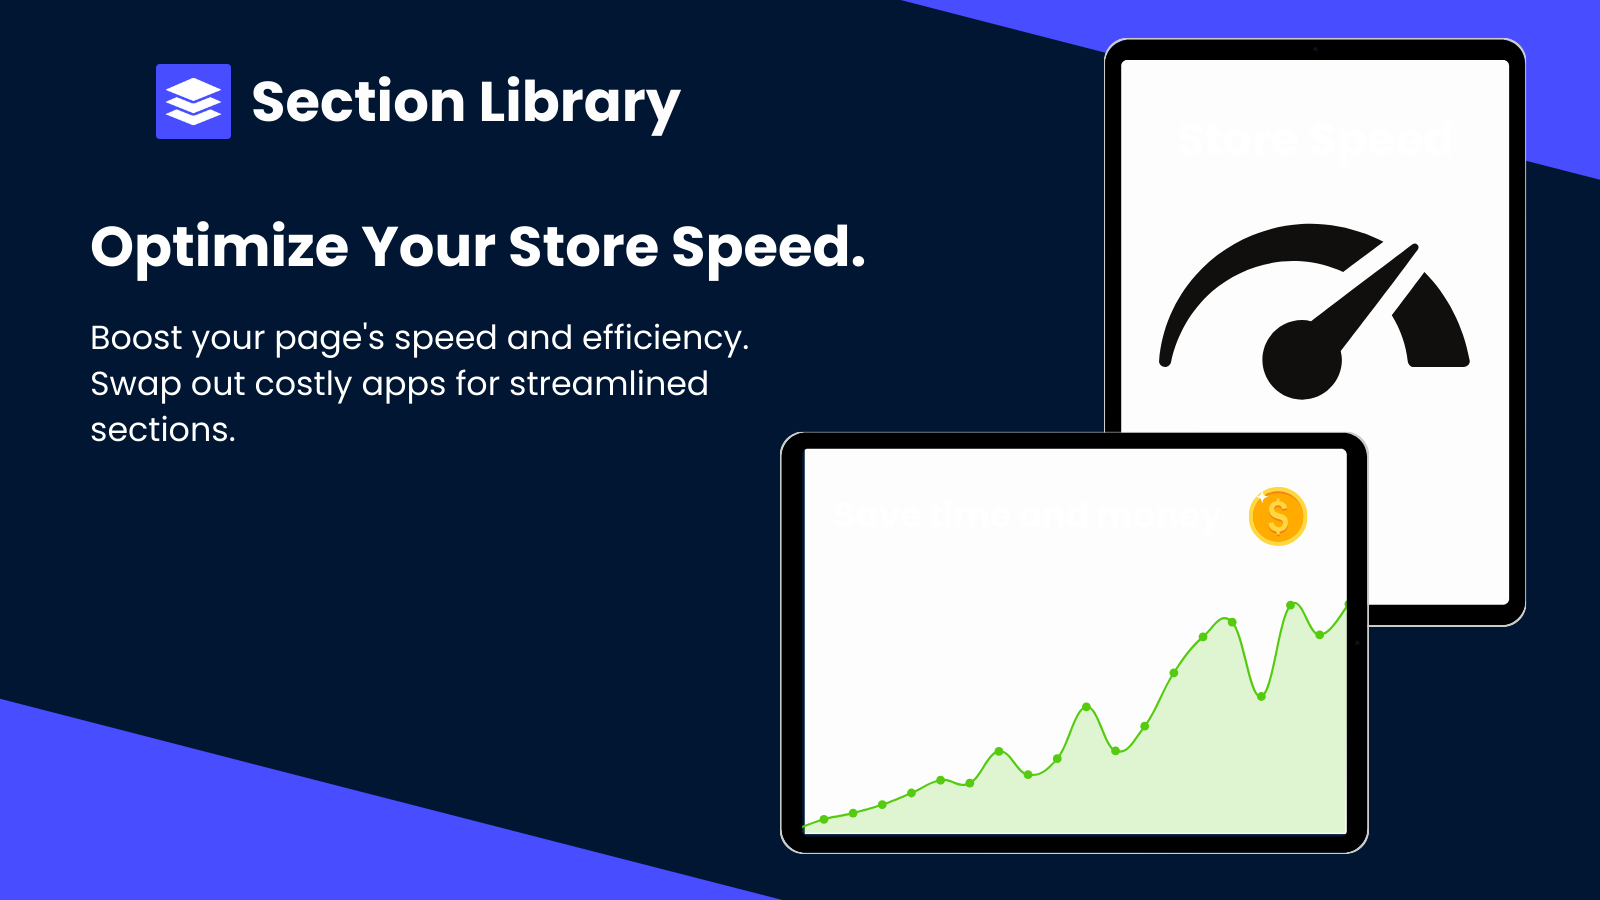 Een uitleg over hoe de app de snelheid van de winkel kan bevorderen